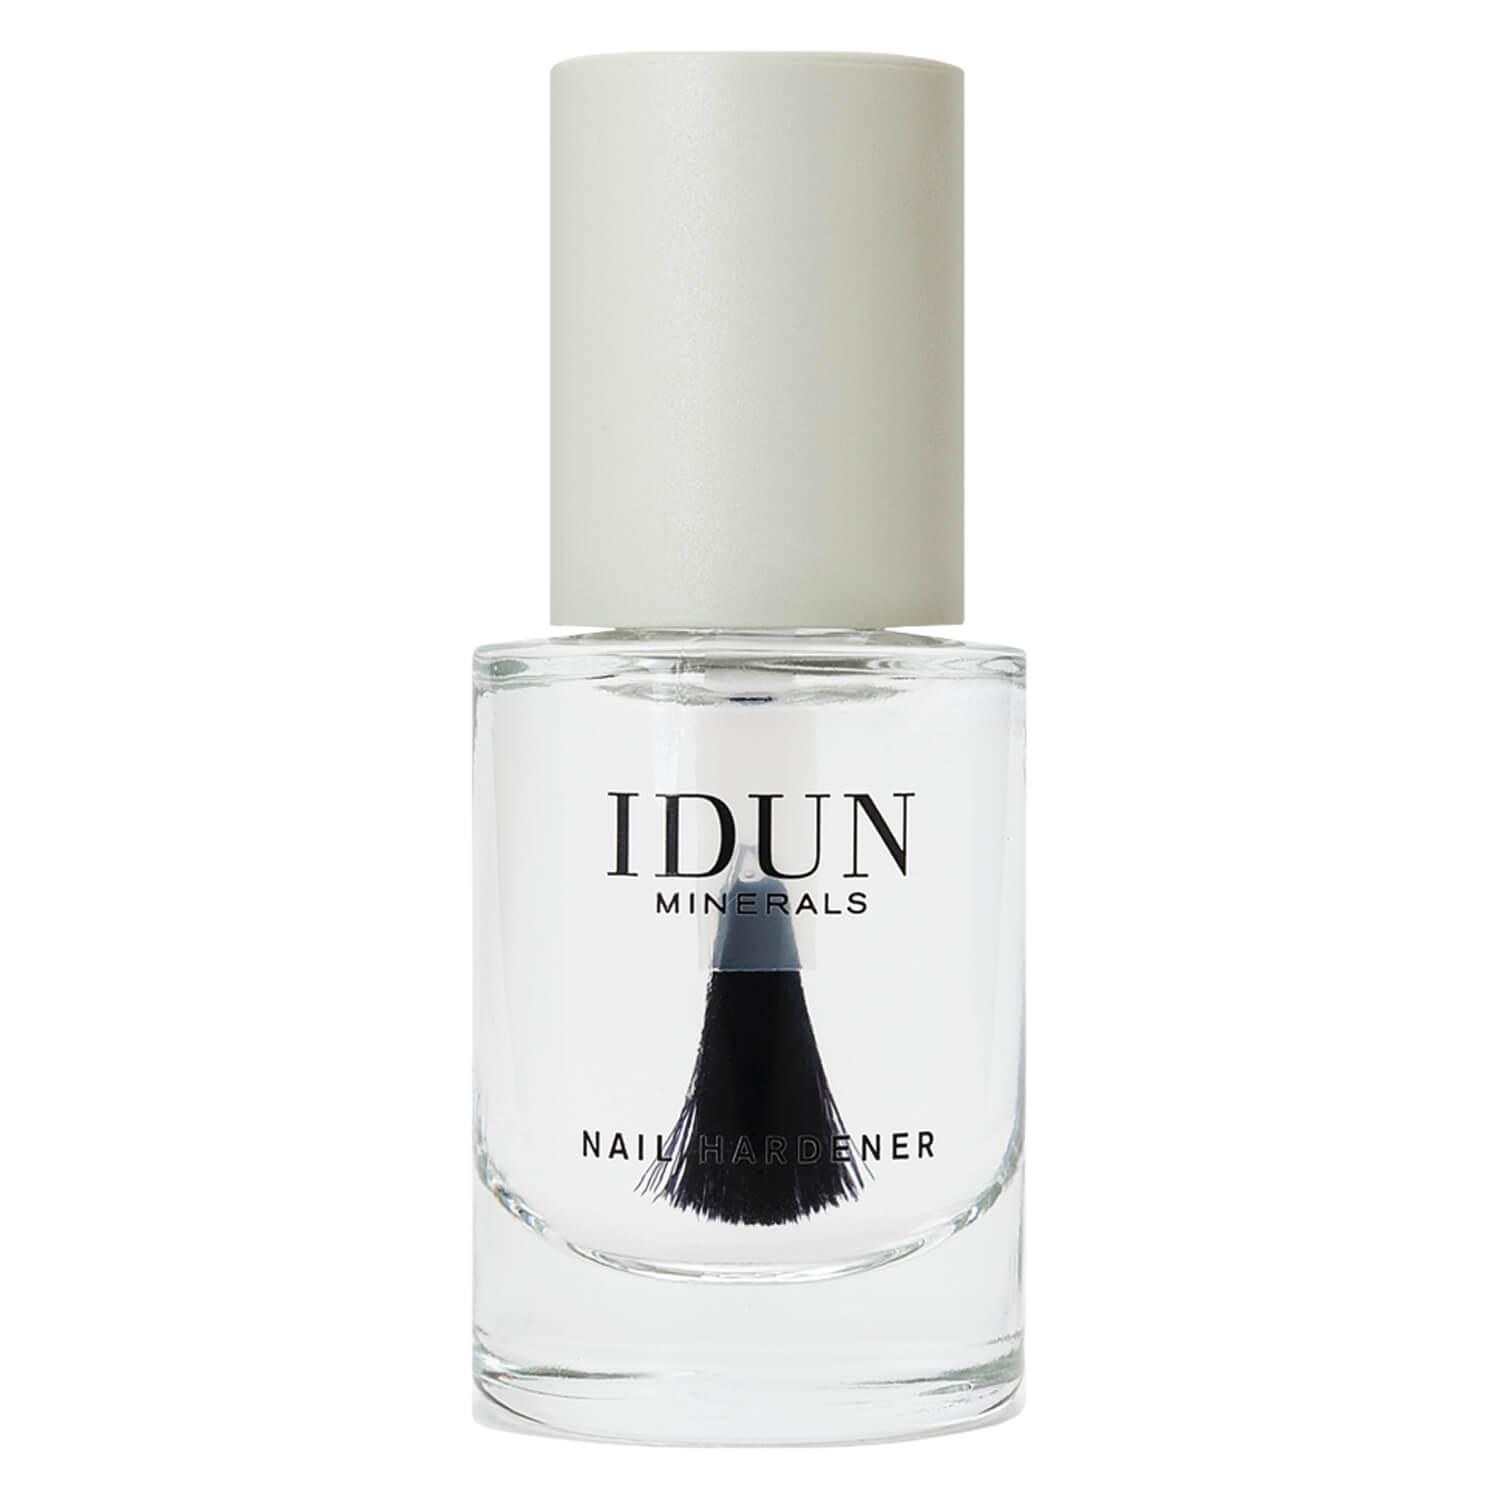 IDUN Nails - Nail Hardener